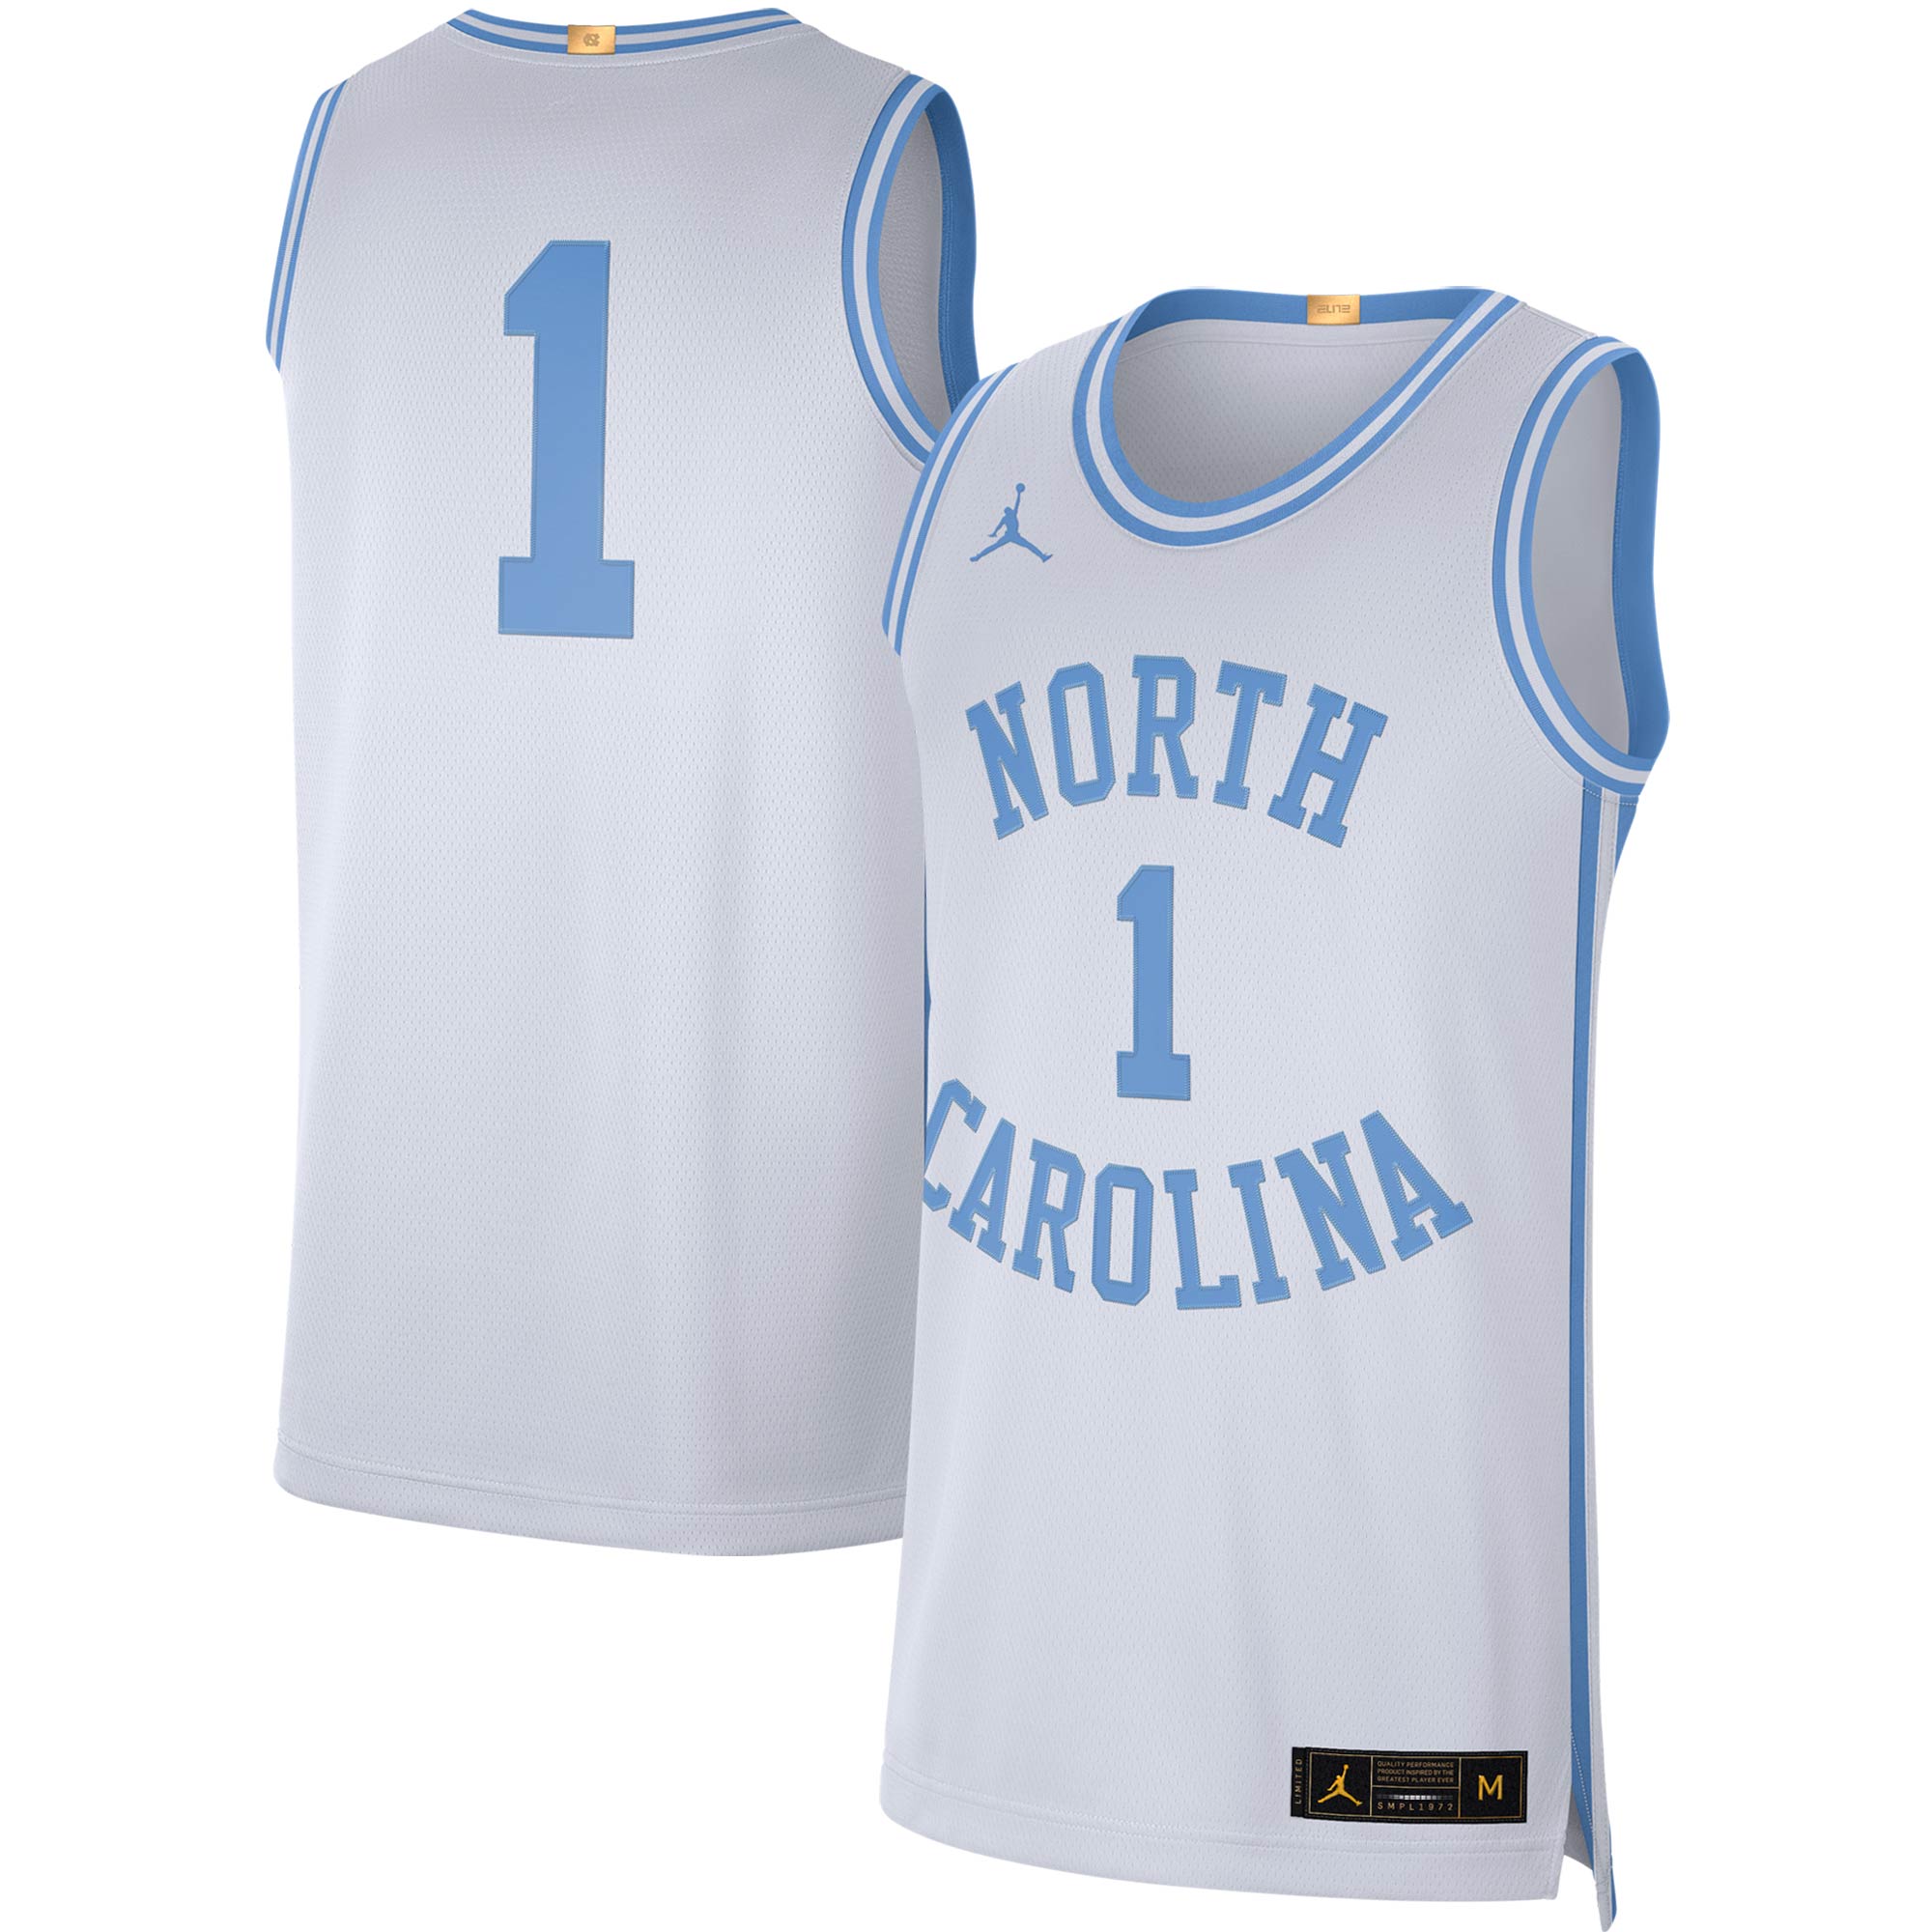 North Carolina Tar Heels Basketball Jersey Footlocker Powder Blue